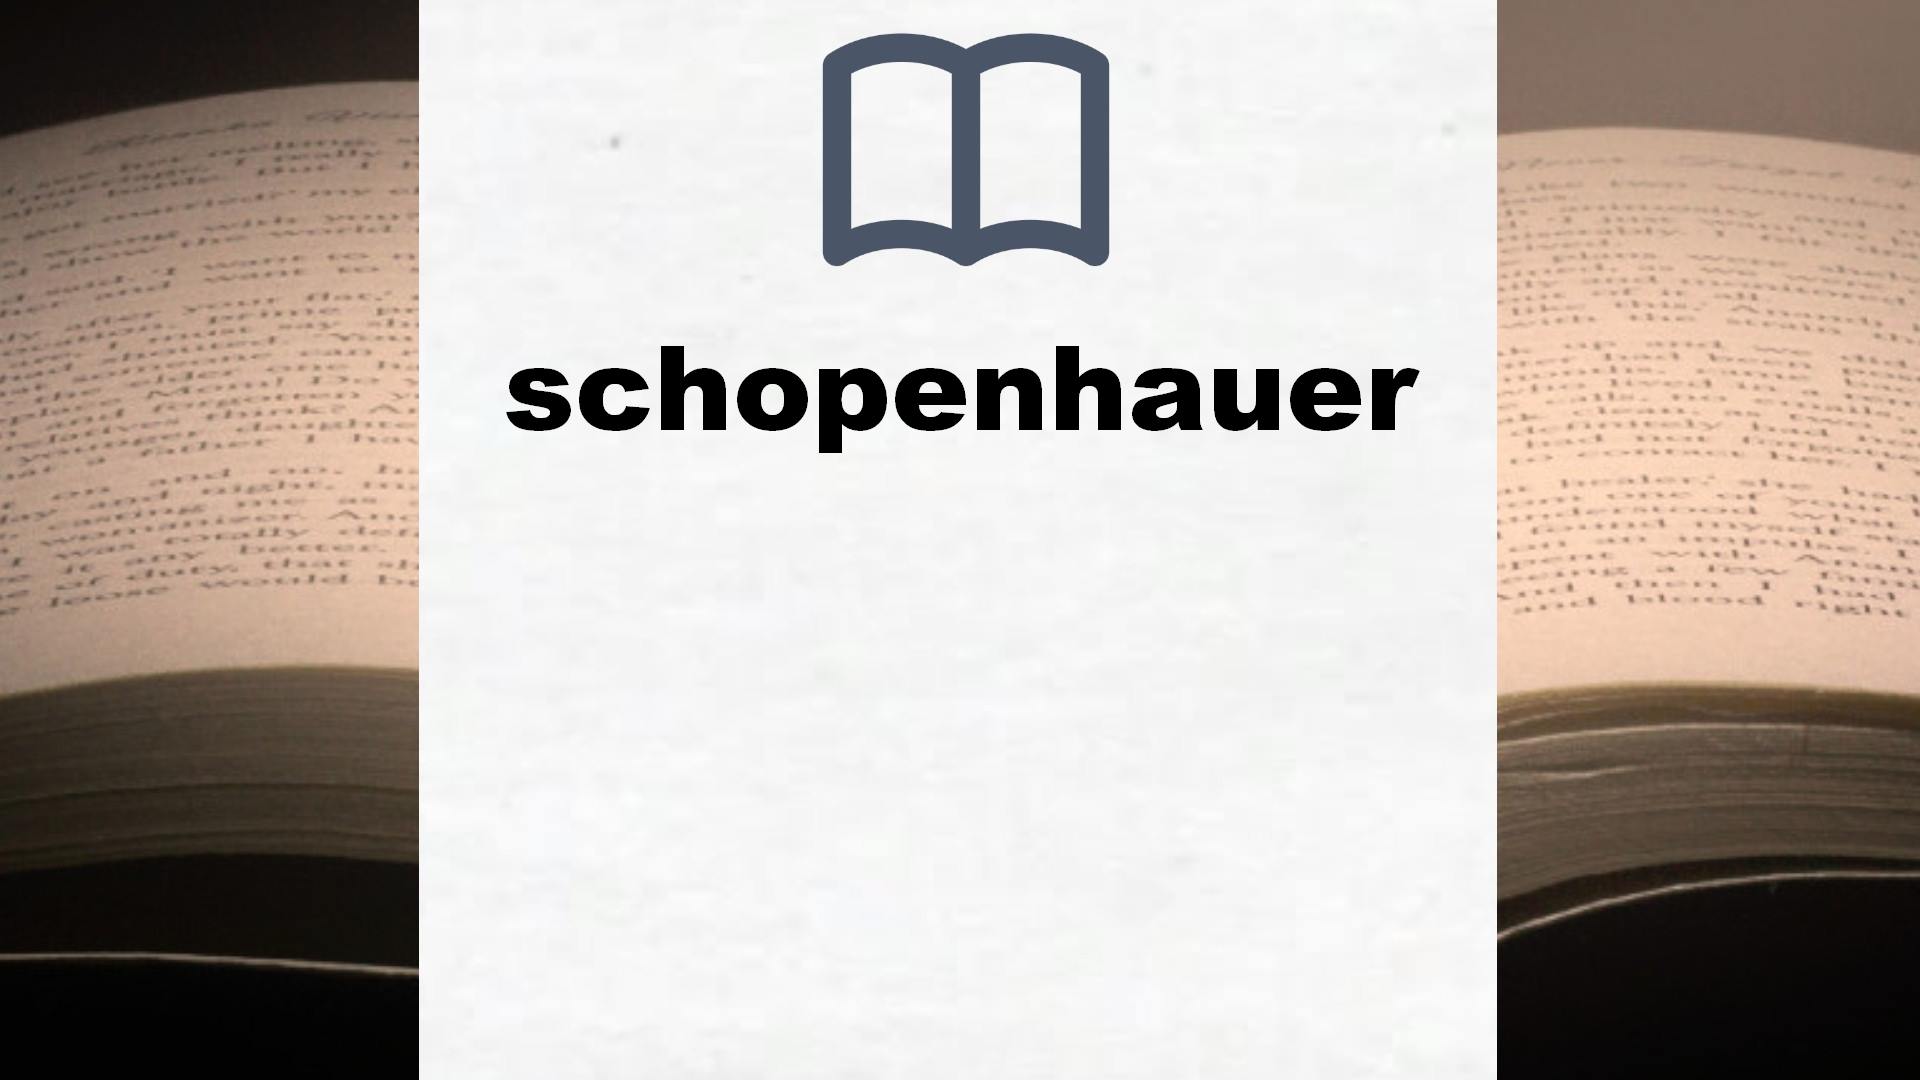 Libros sobre schopenhauer